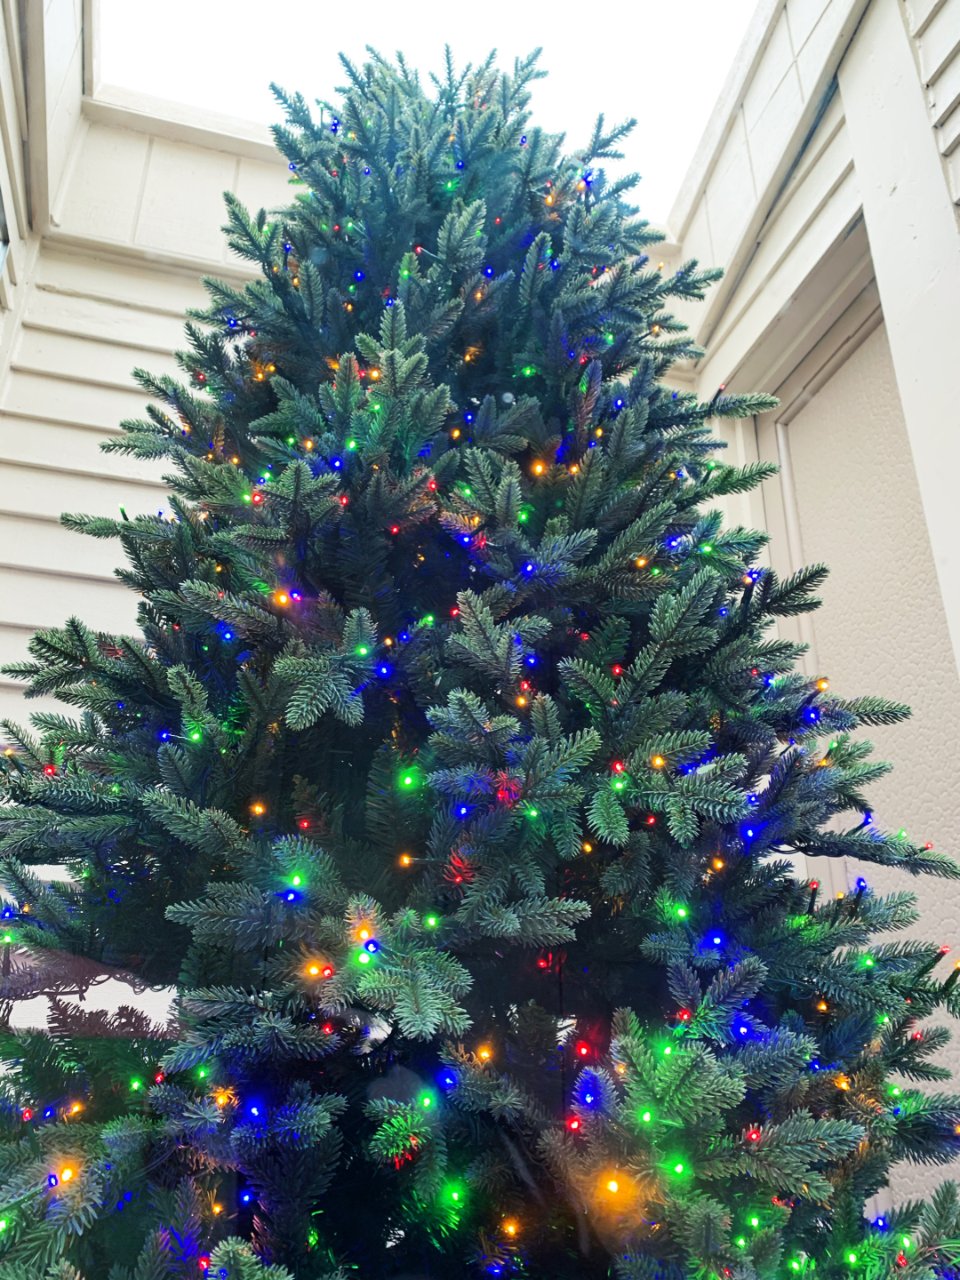 一棵树装扮起浓浓圣诞气氛...